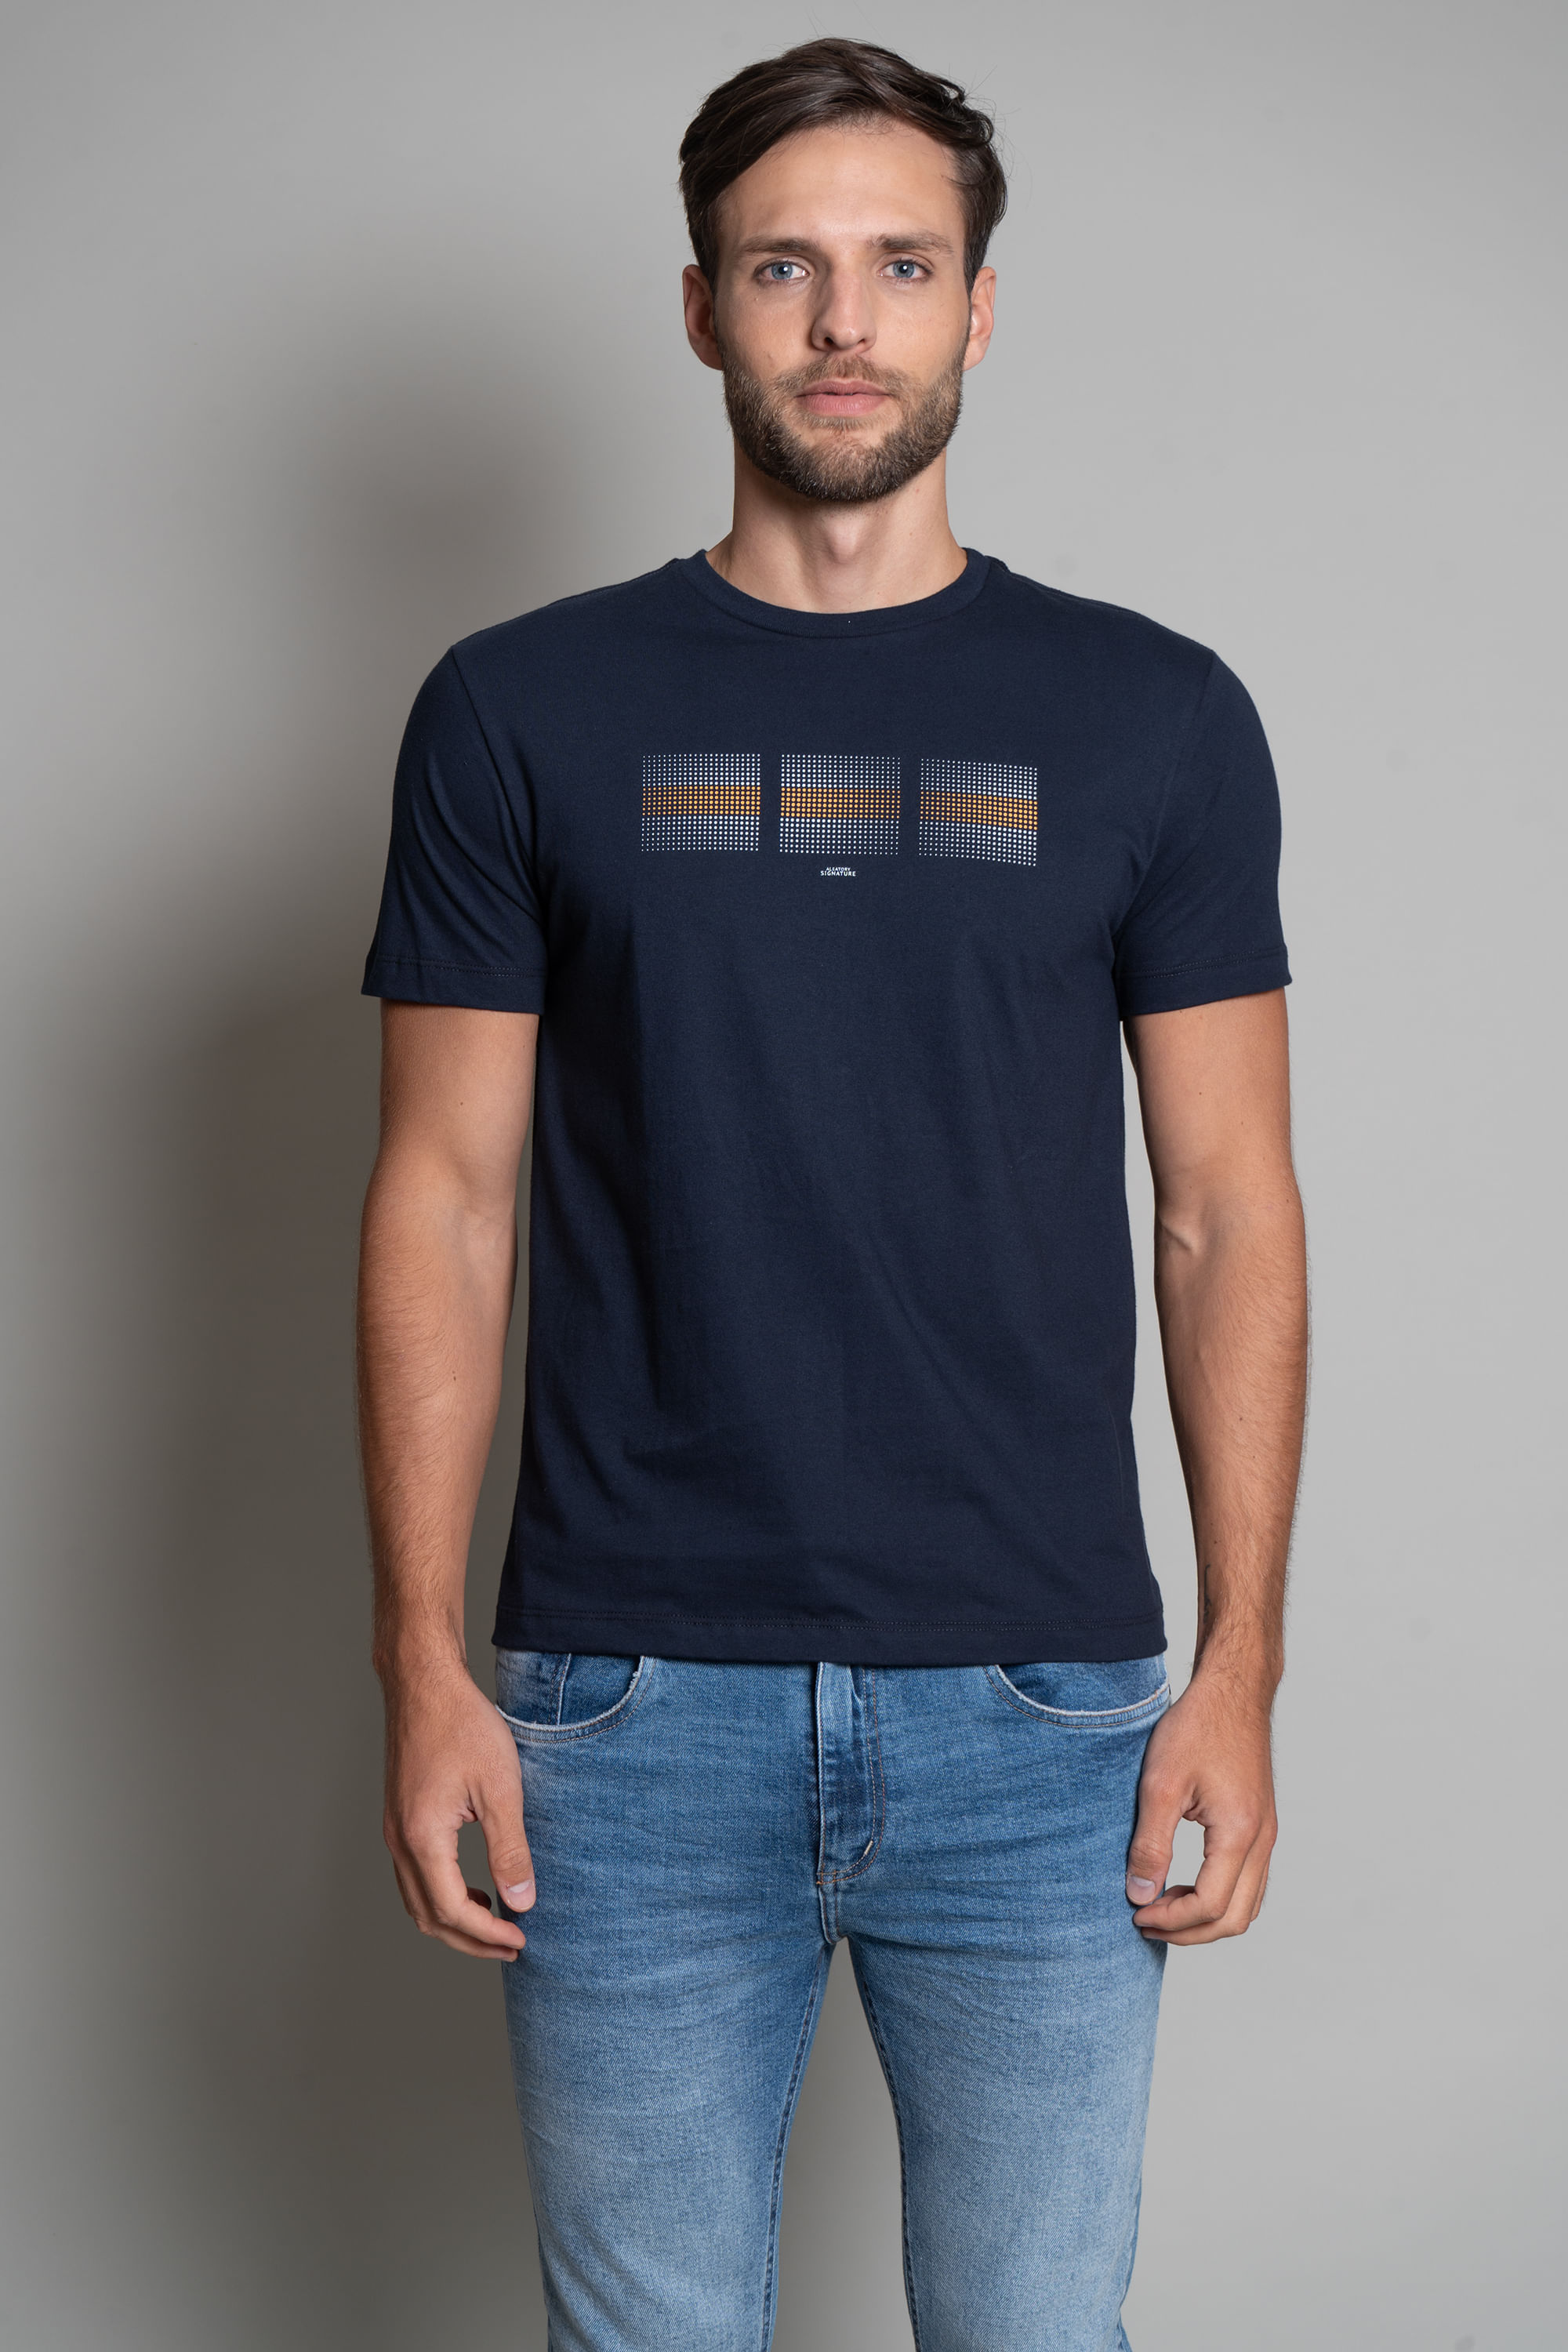 Camiseta-Signature-Estampada-Pixel-Marinho-Azul-Marinho-P